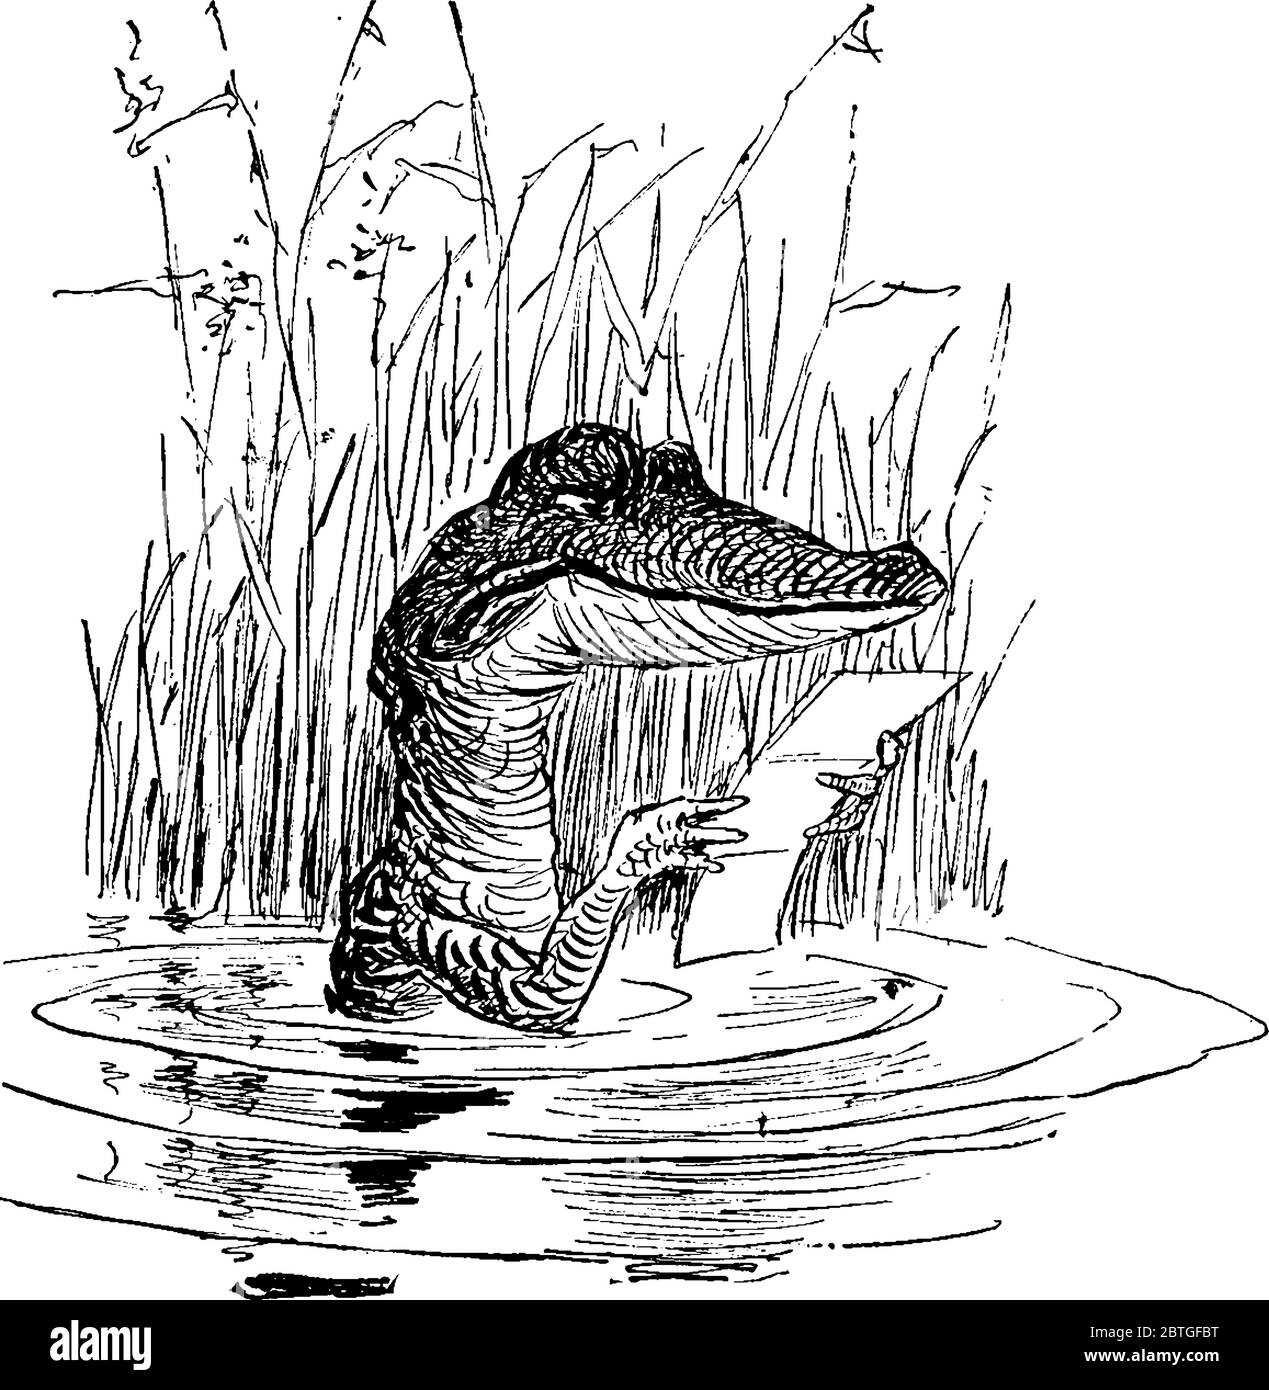 Représentation typique d'un crocodile de dessin animé en rivière, lecture d'une lettre, dessin de ligne vintage ou illustration de gravure Illustration de Vecteur